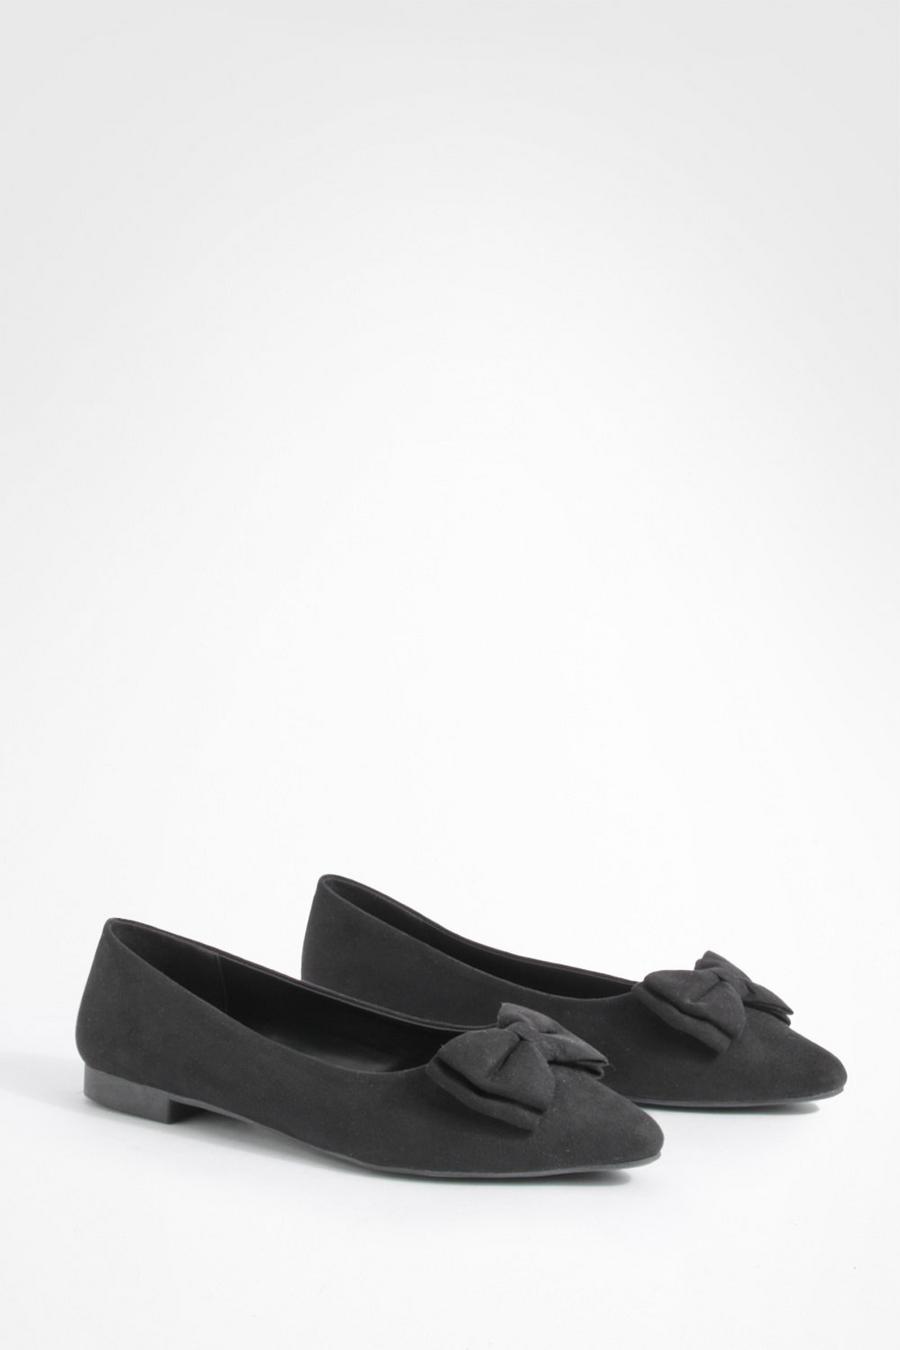 Breite Passform spitze flache Schuhe mit Schleifen-Detail, Black